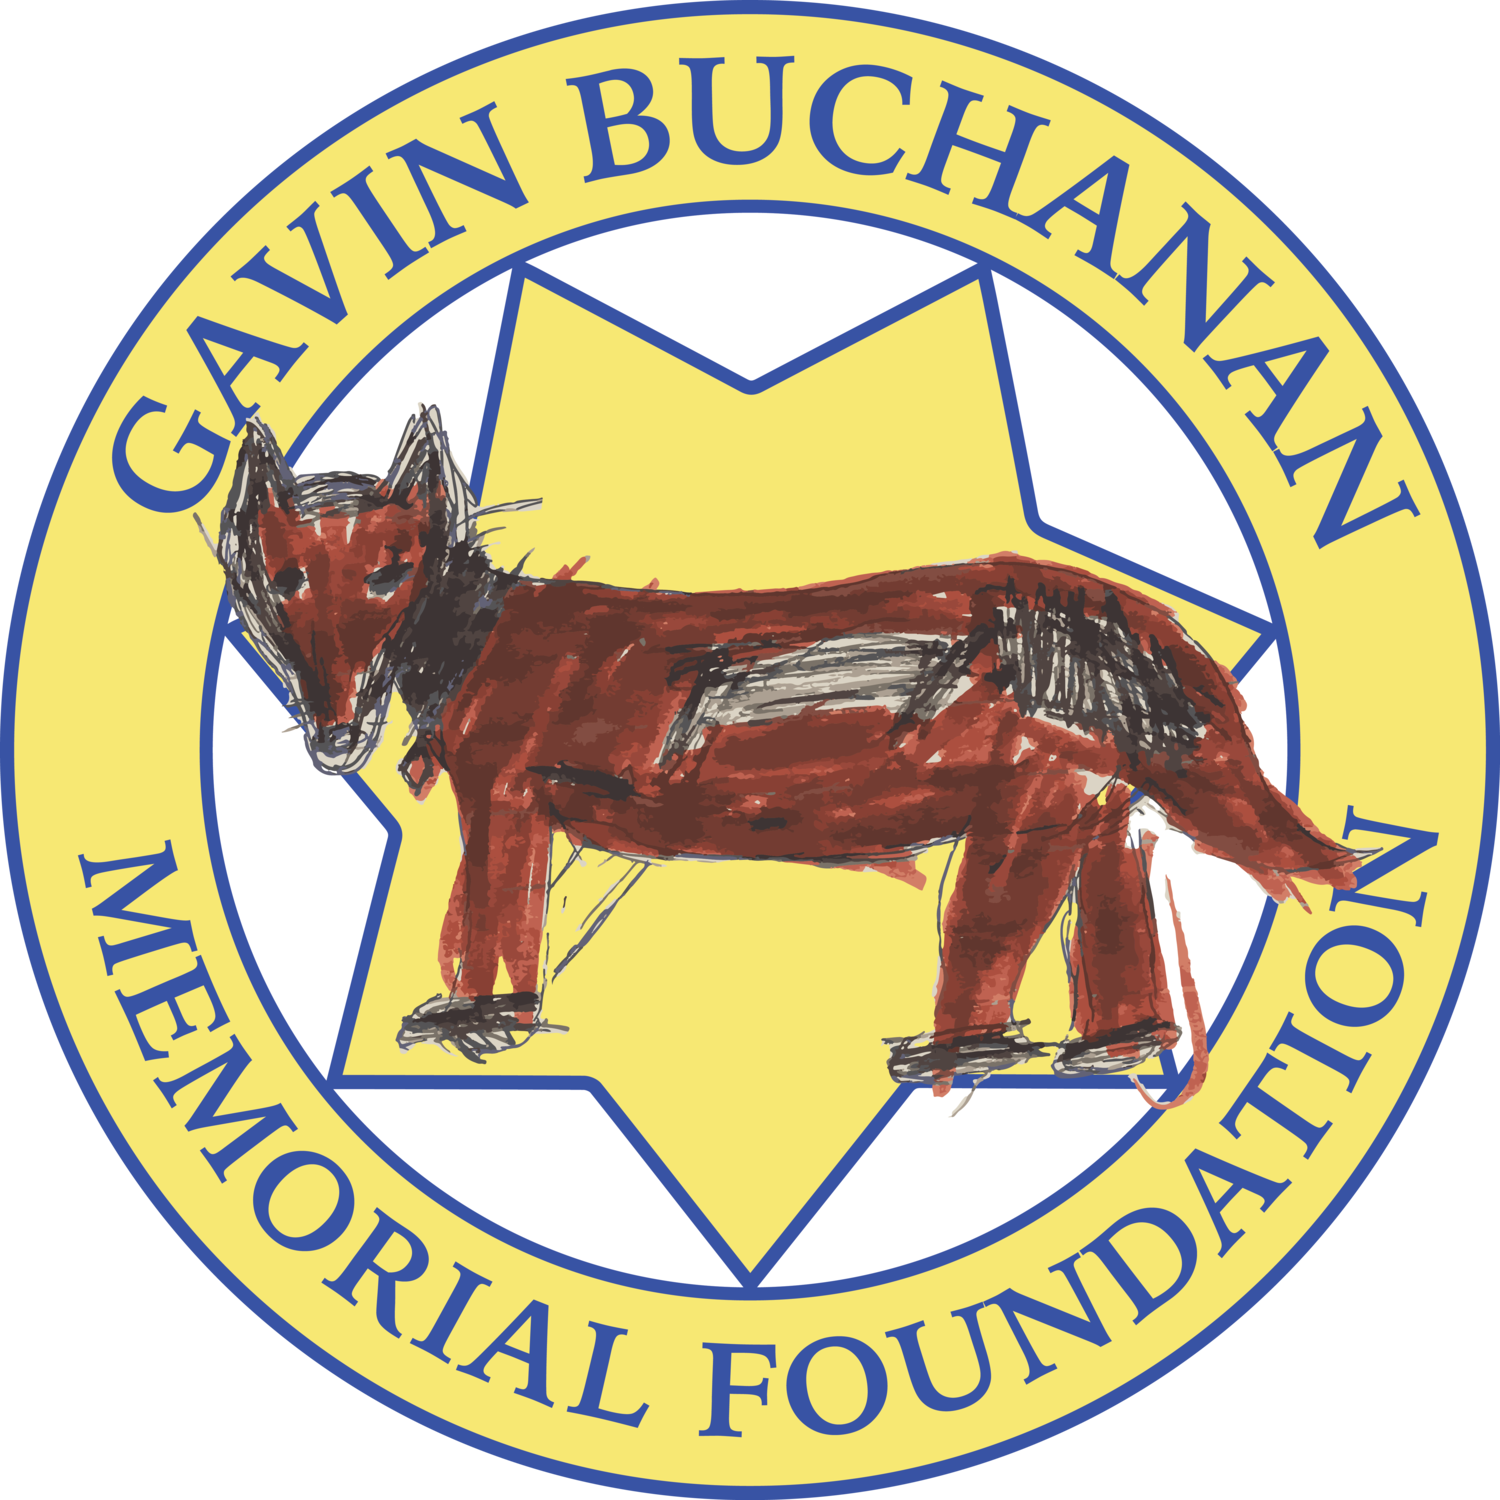 gavin-buchanan-memorial-foundation